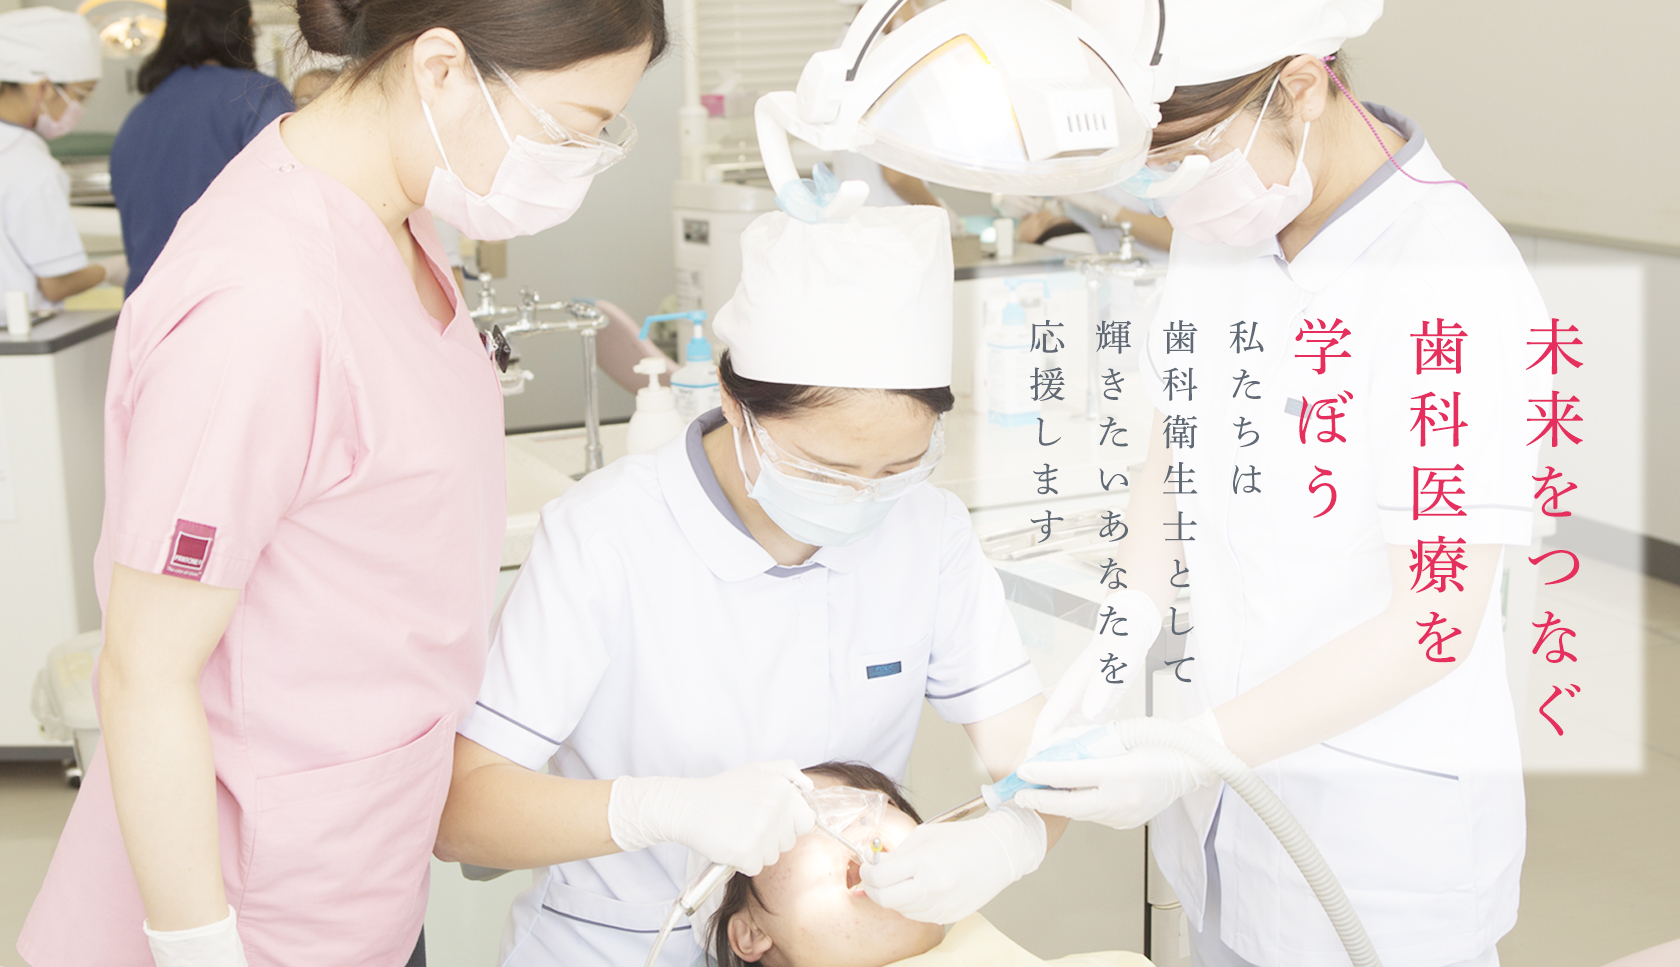 未来をつなぐ歯科医療を学ぼう 沖縄県歯科医師会は歯科衛生士として輝きたいあなたを応援します